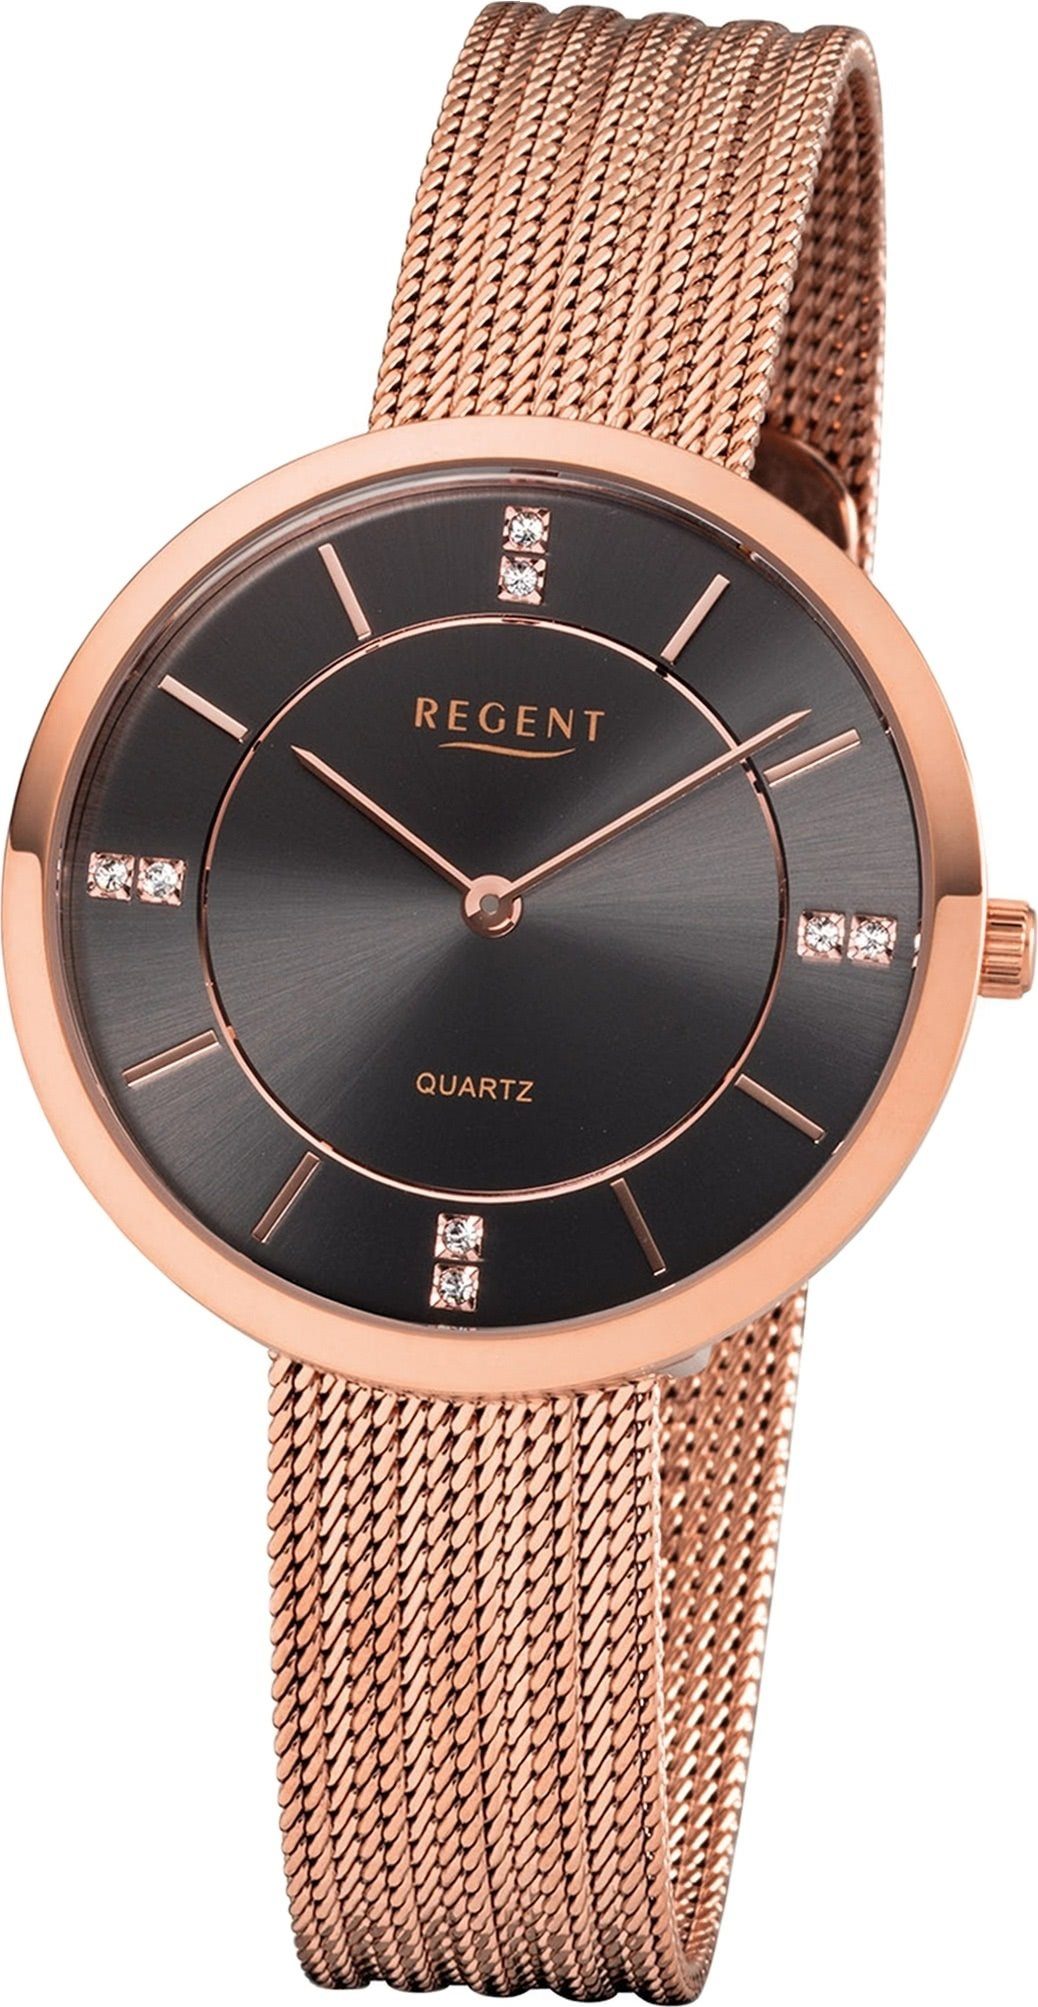 Regent Quarzuhr Regent Metall Damen Uhr F-1157 Analog, Damenuhr Metallarmband rosegold, rundes Gehäuse, mittel (ca. 34mm)